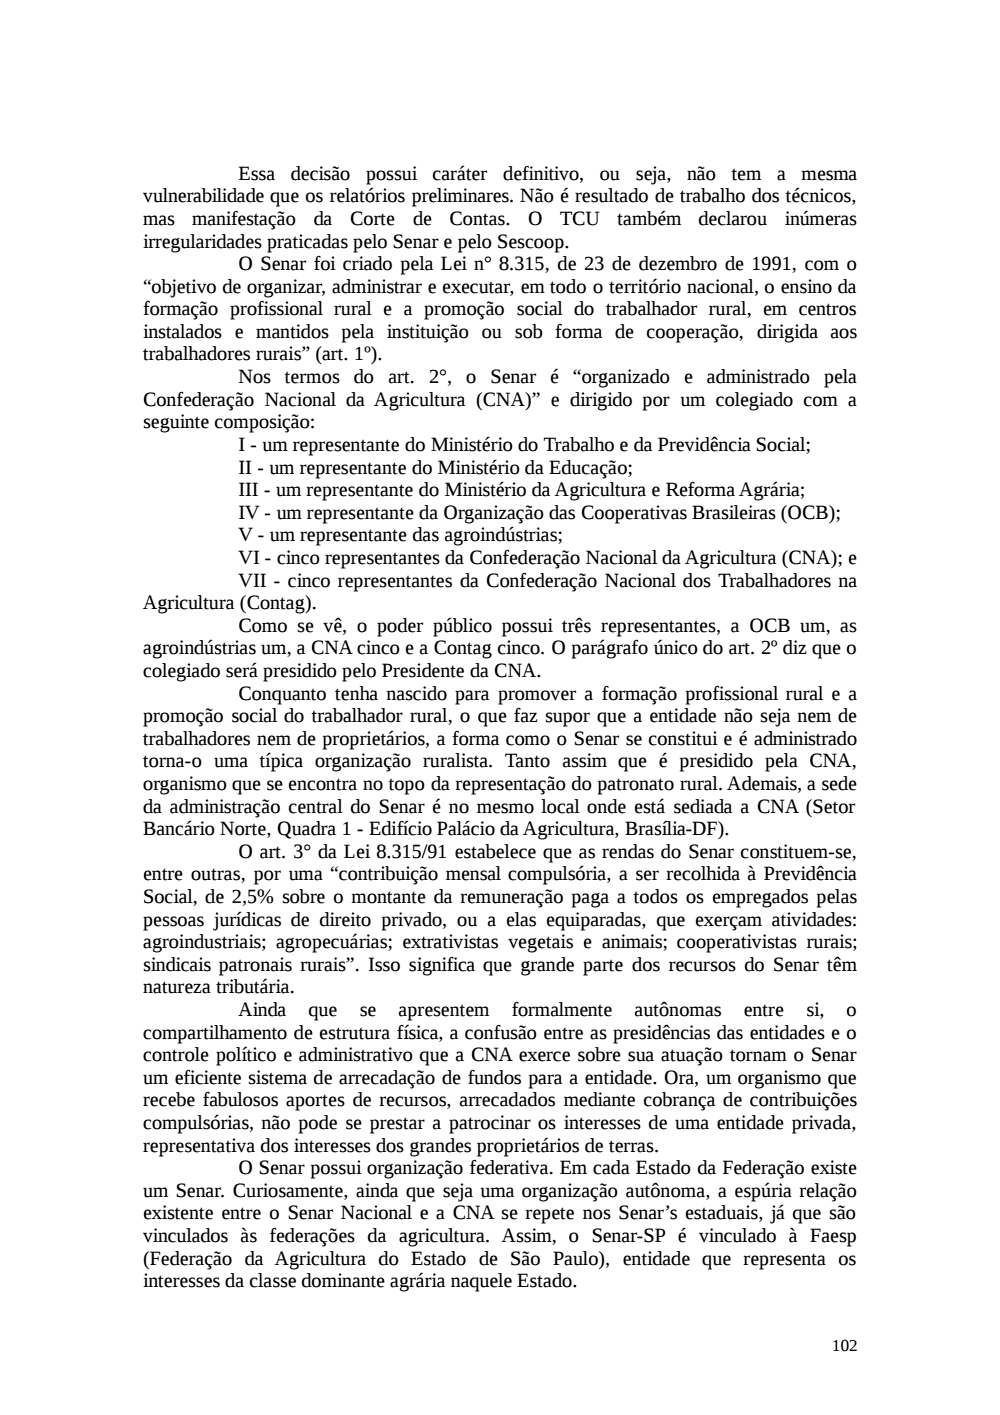 Page 102 from Relatório final da comissão